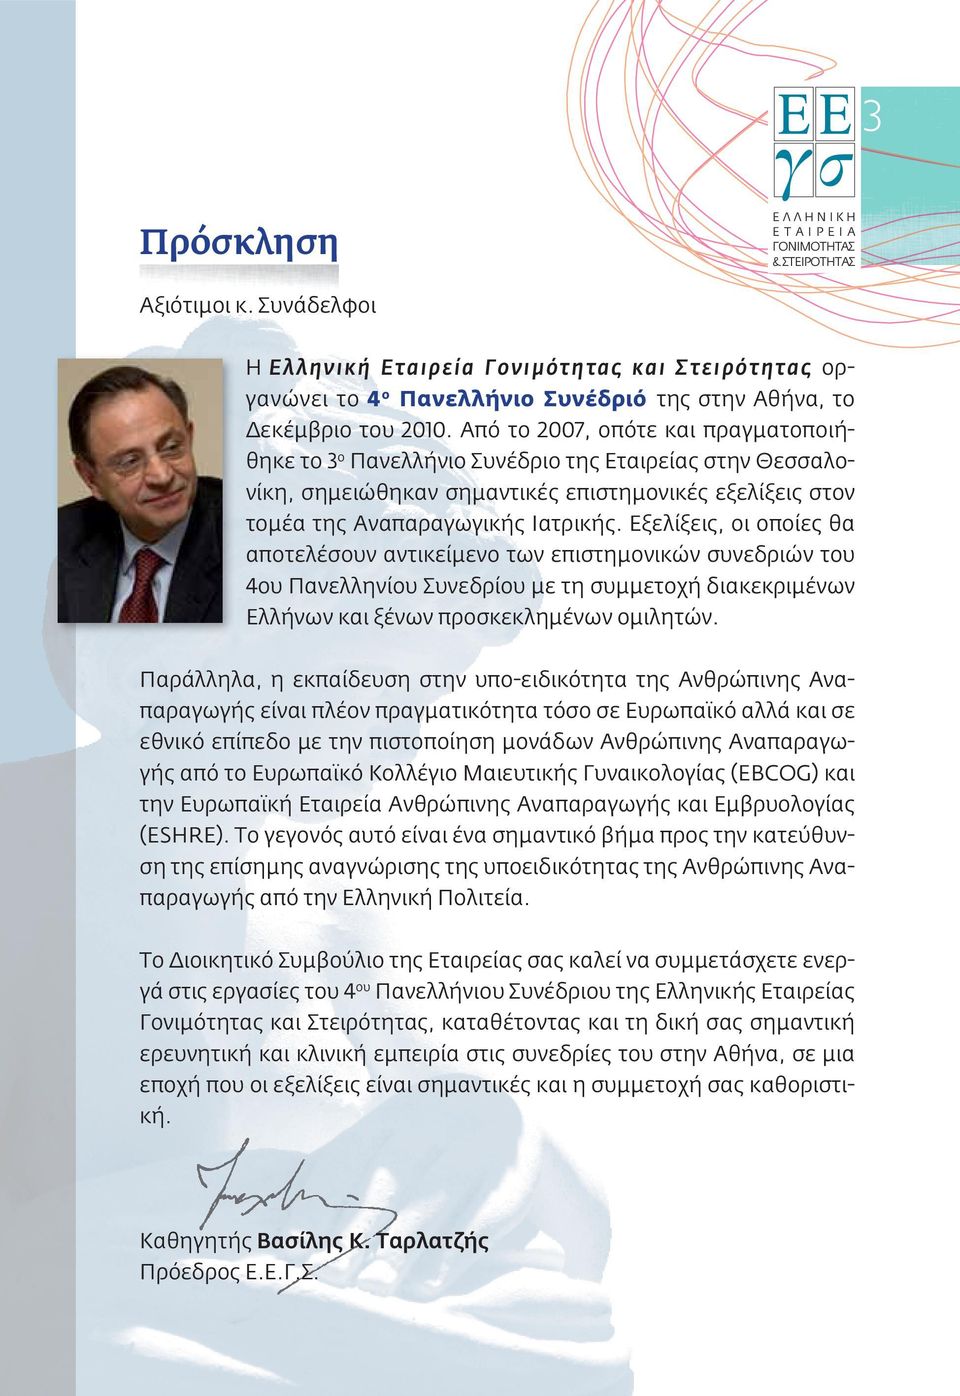 Από το 2007, οπότε και πραγματοποιήθηκε το 3 ο Πανελλήνιο Συνέδριο της Εταιρείας στην Θεσσαλονίκη, σημειώθηκαν σημαντικές επιστημονικές εξελίξεις στον τομέα της Αναπαραγωγικής Ιατρικής.